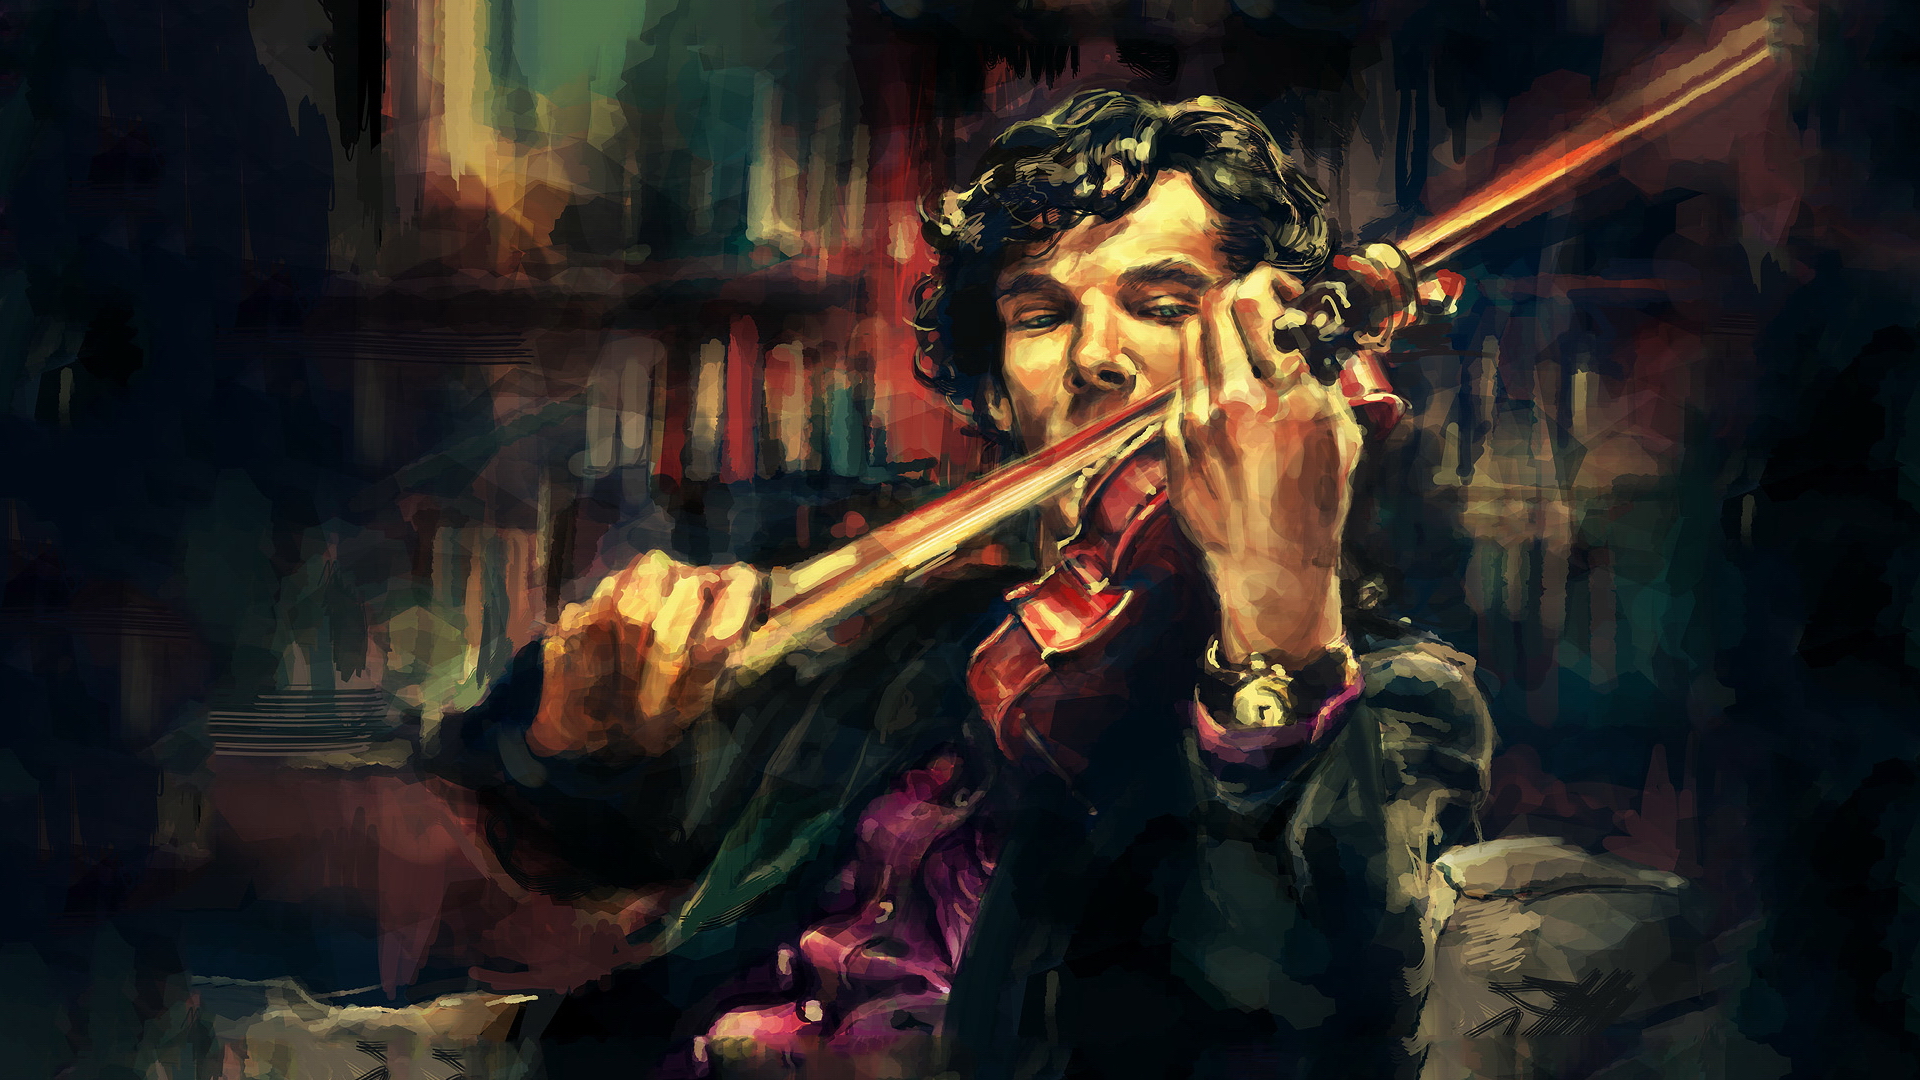 셜록 바탕 화면,음악,바이올린 연주자,바이올린,퍼뜨리는 사람,악기